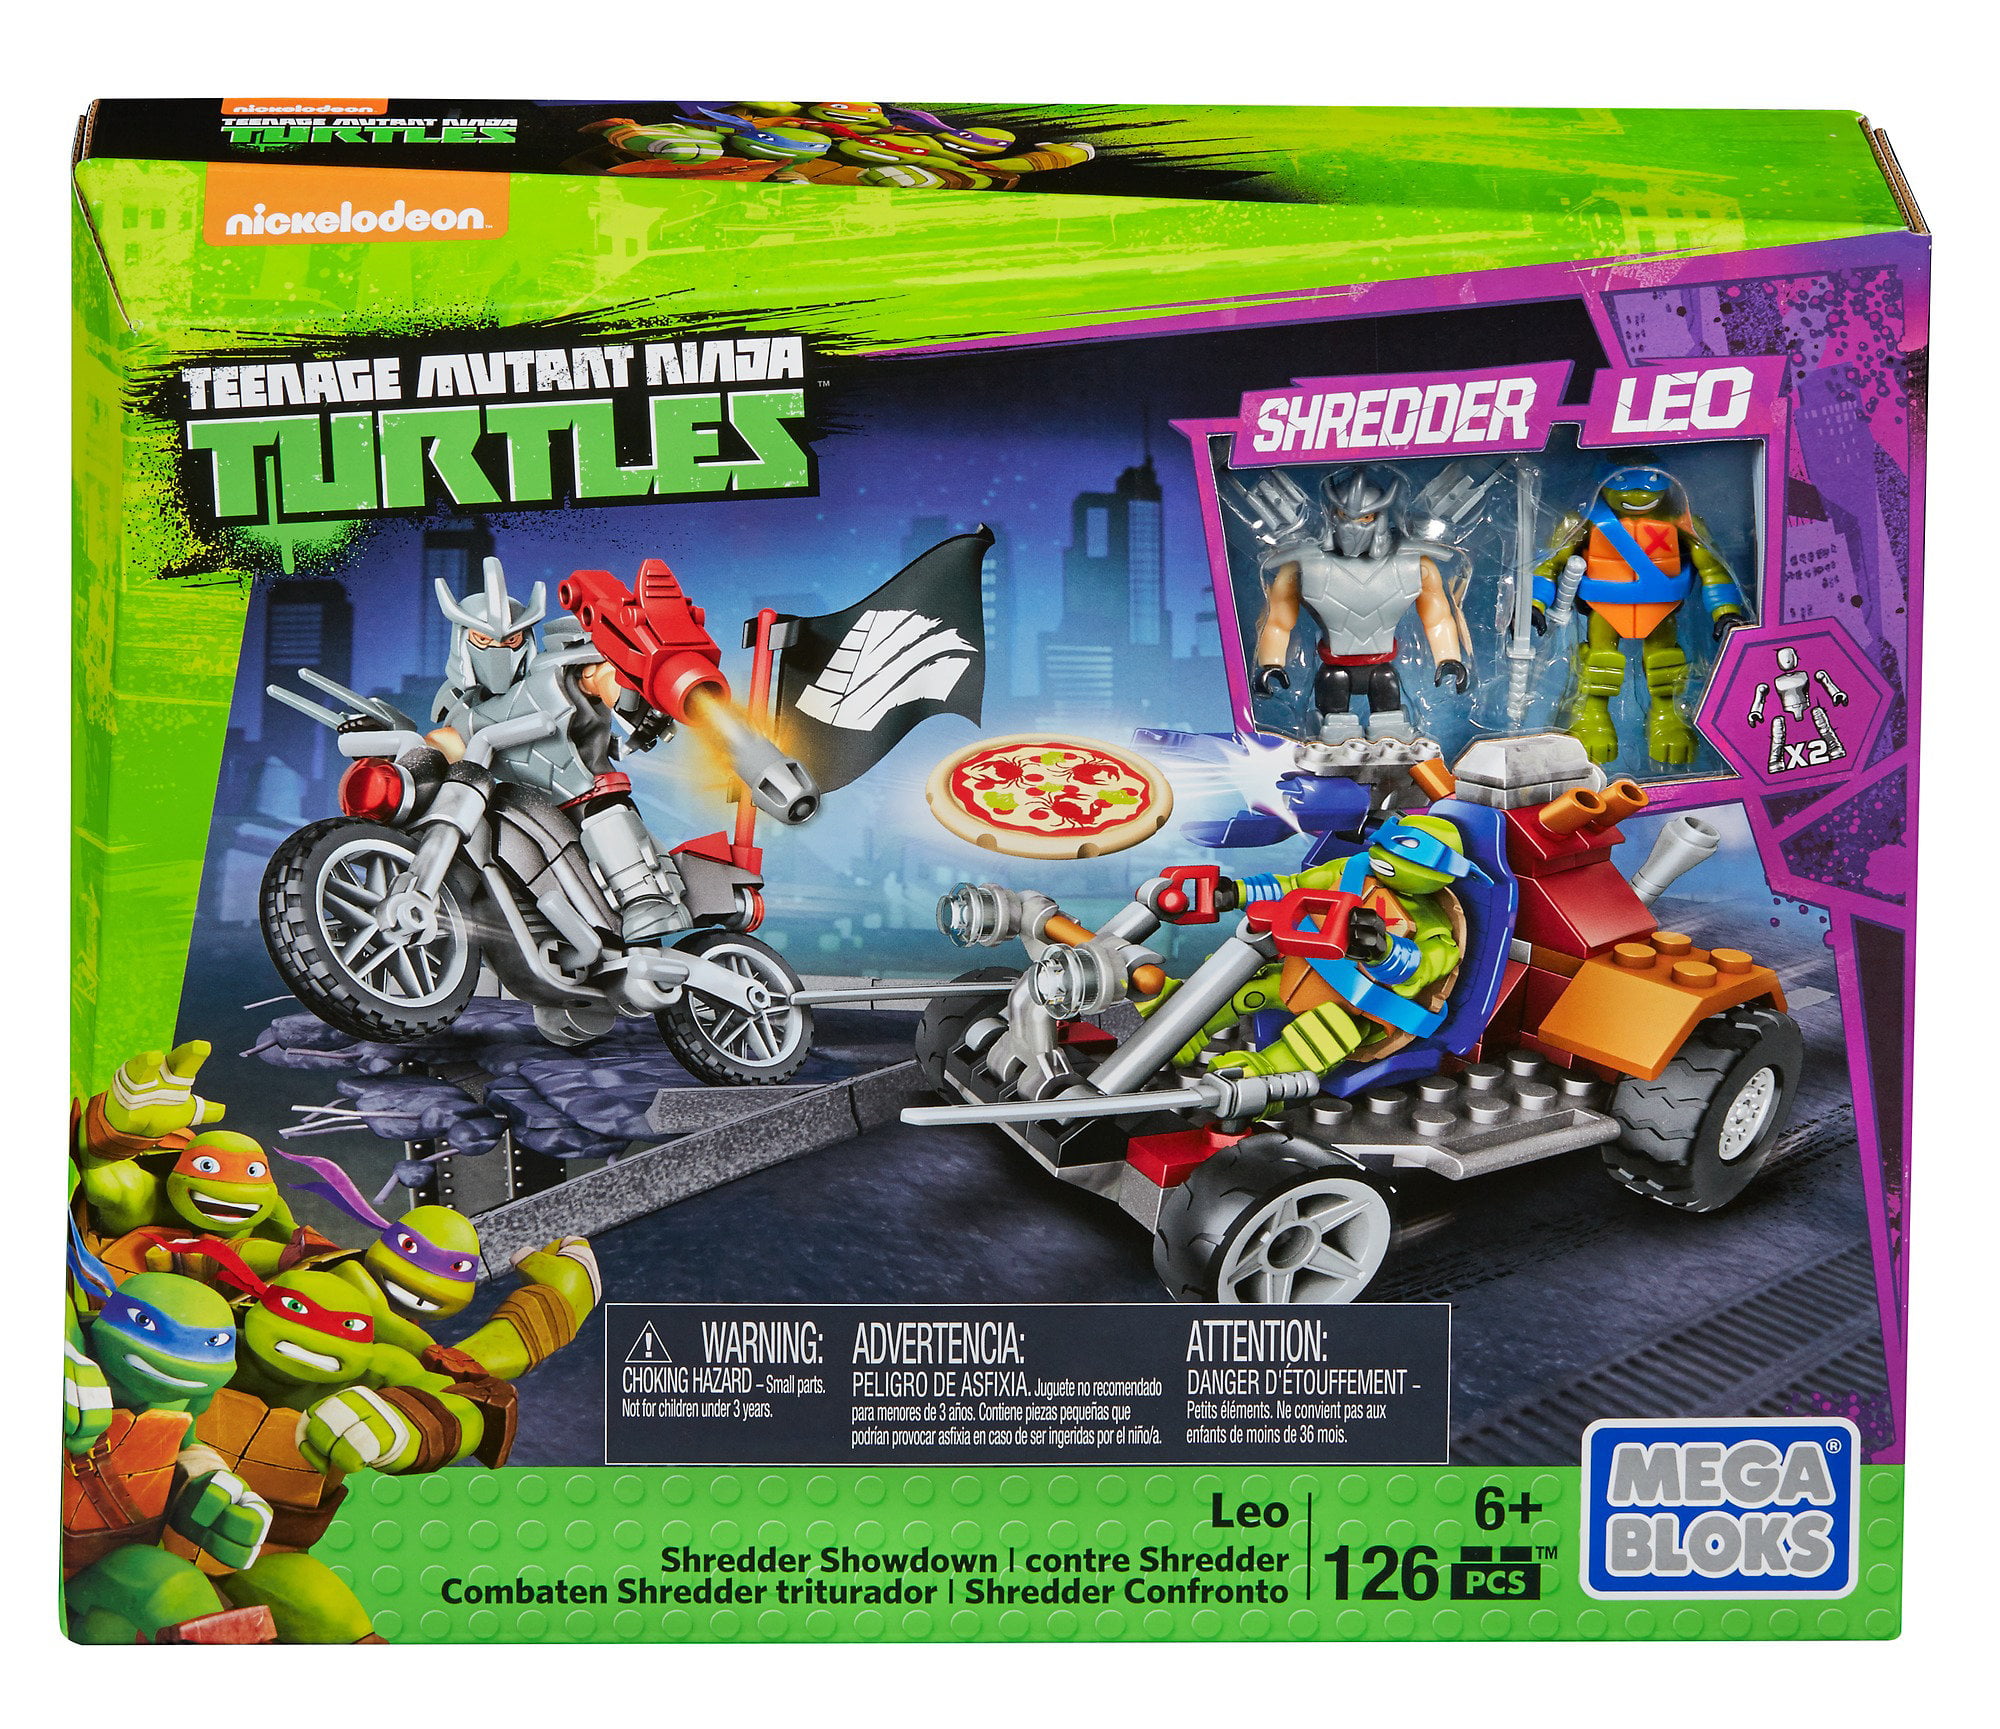 Mega Bloks Teenage Mutant Ninja Turtles Leo Shredder Showdown